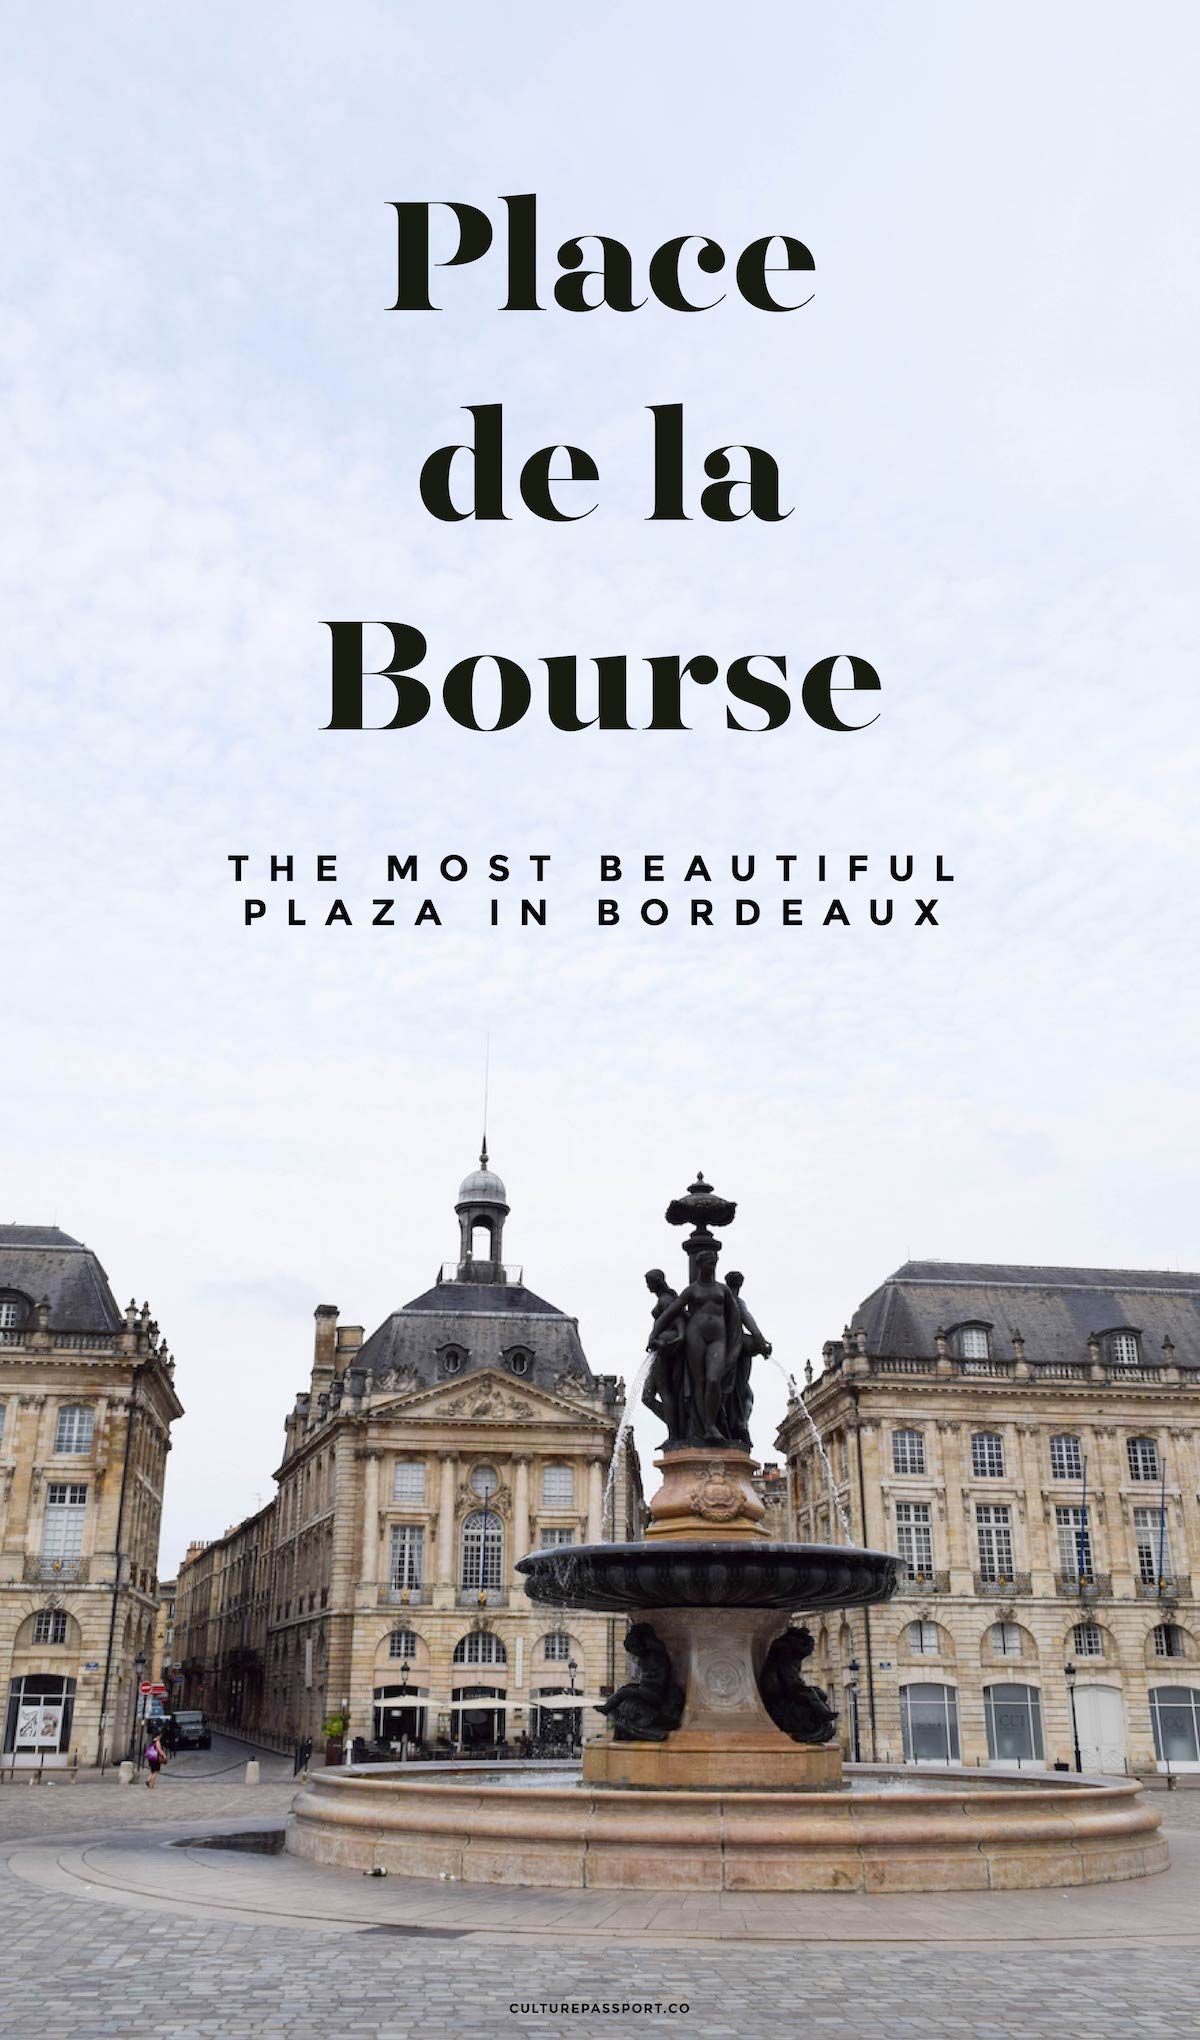 Place de la Bourse - Most Beautiful Plaza in Bordeaux